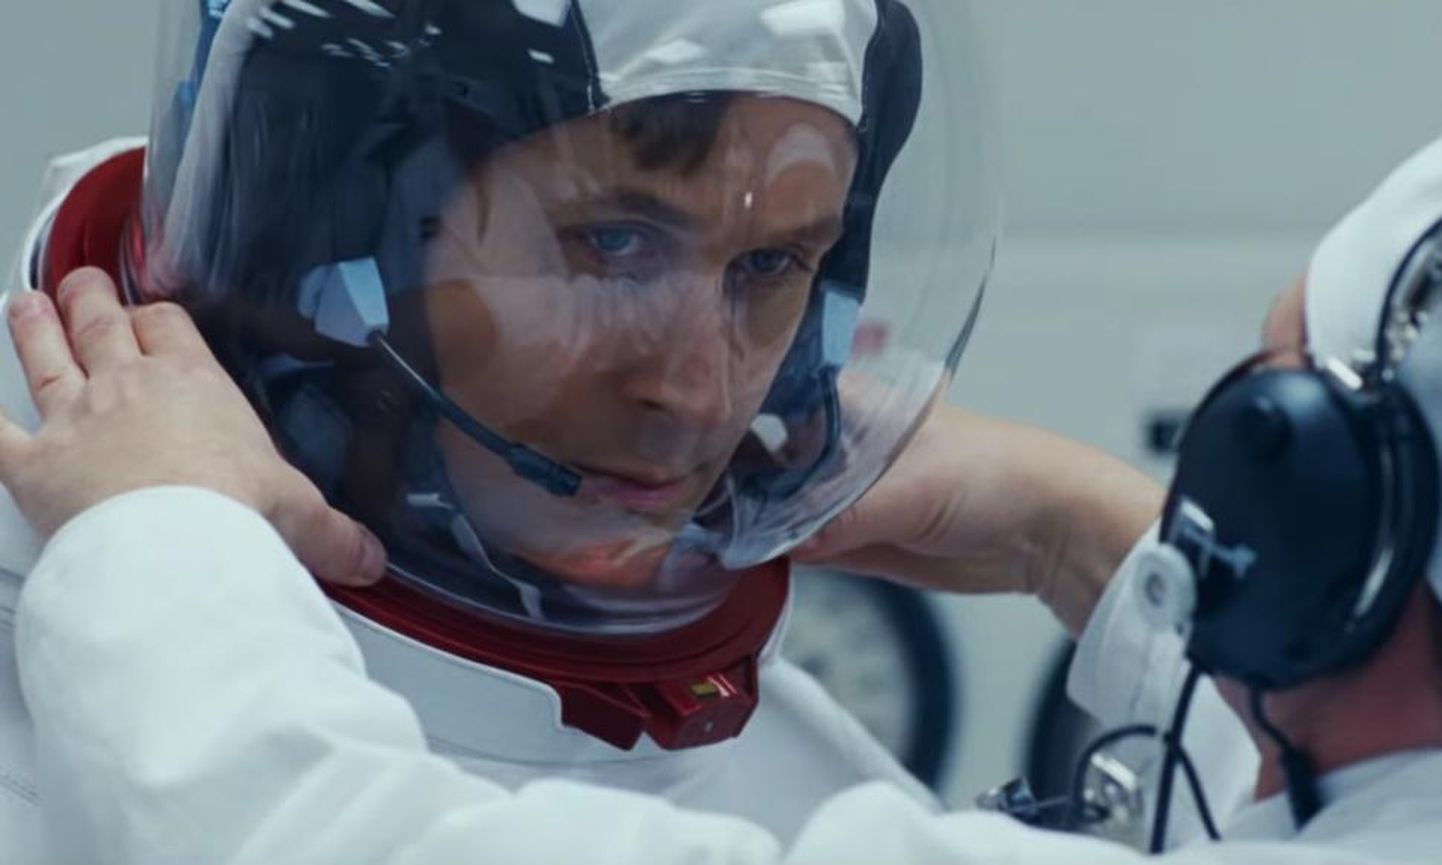 Ryan Goslingi kehastatud Neil Armstrong hetk enne Apollo 11 pardale astumist. Kas mees kosmosest ka tagasi tuleb, ei teadnud sel hetkel veel keegi.